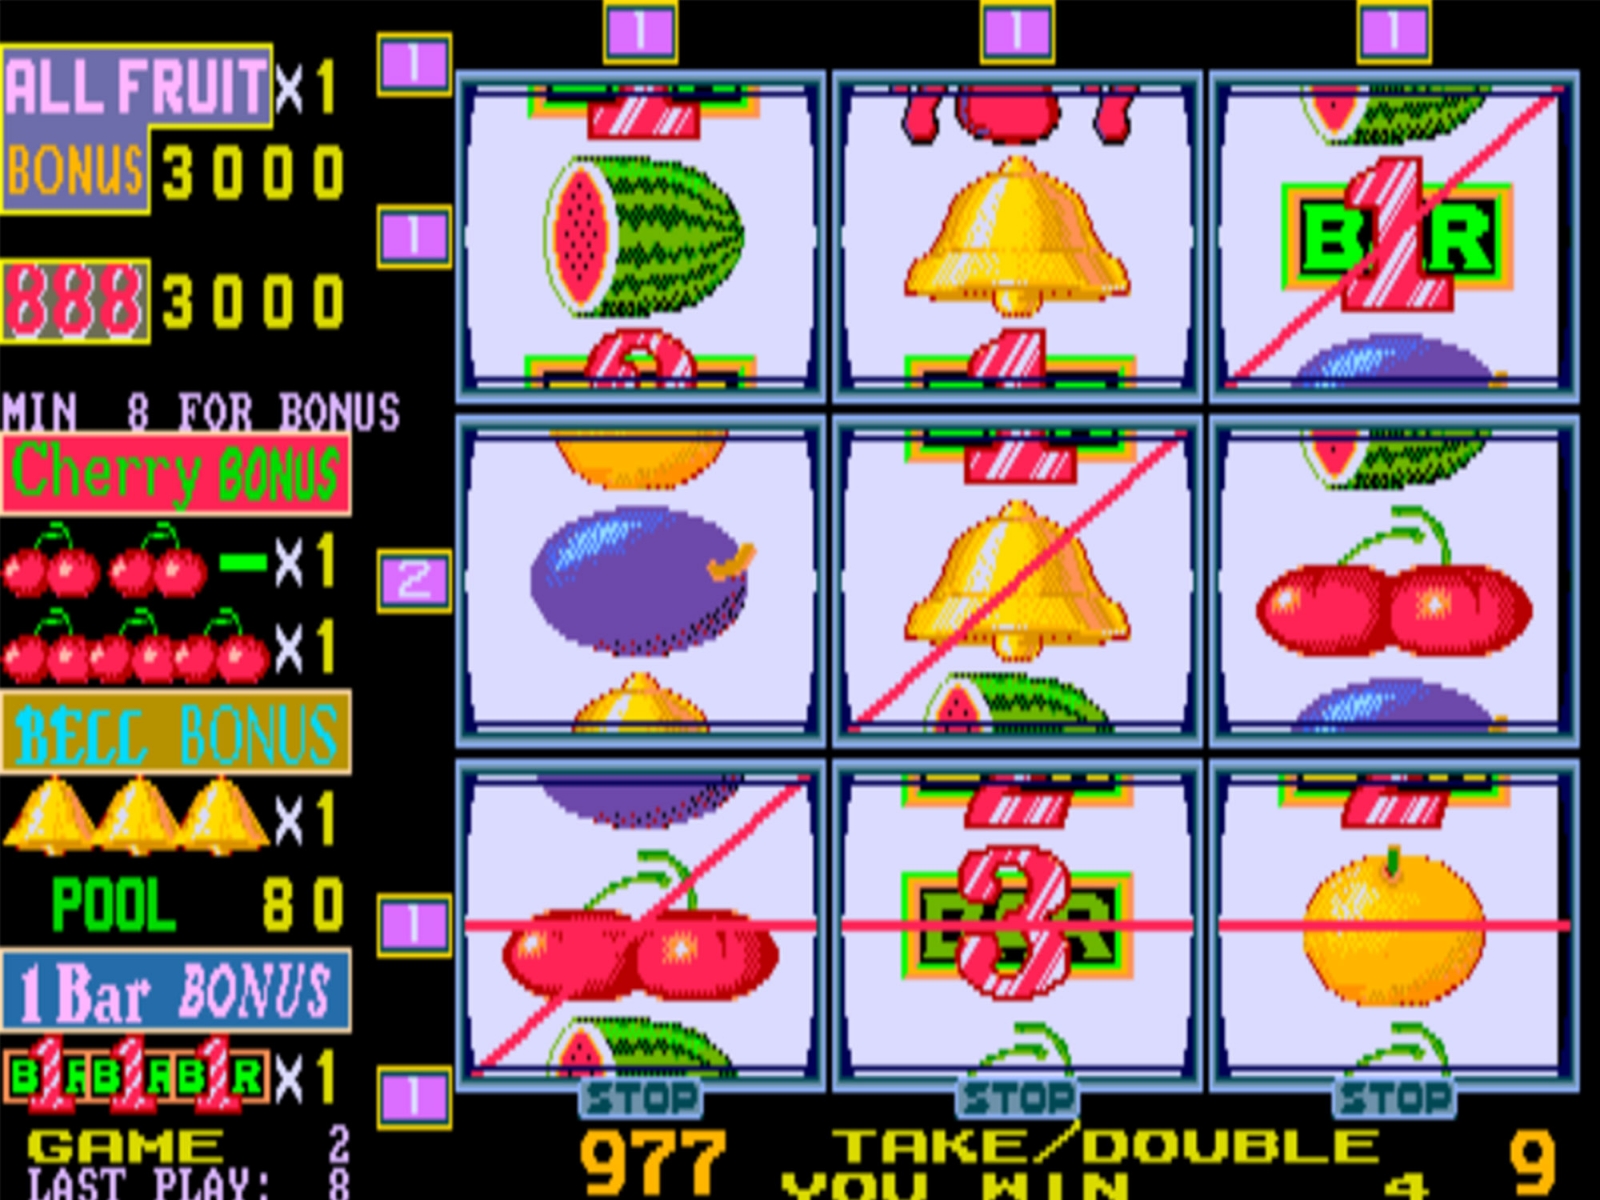 Игровые автоматы 90 годов igrovieavtomaty90 org ru. Игры из игровые автоматы 90 х. Игровой автомат вишня 90-х. Игровой автомат компот 90-х. Игровой автомат Cherry Bonus.